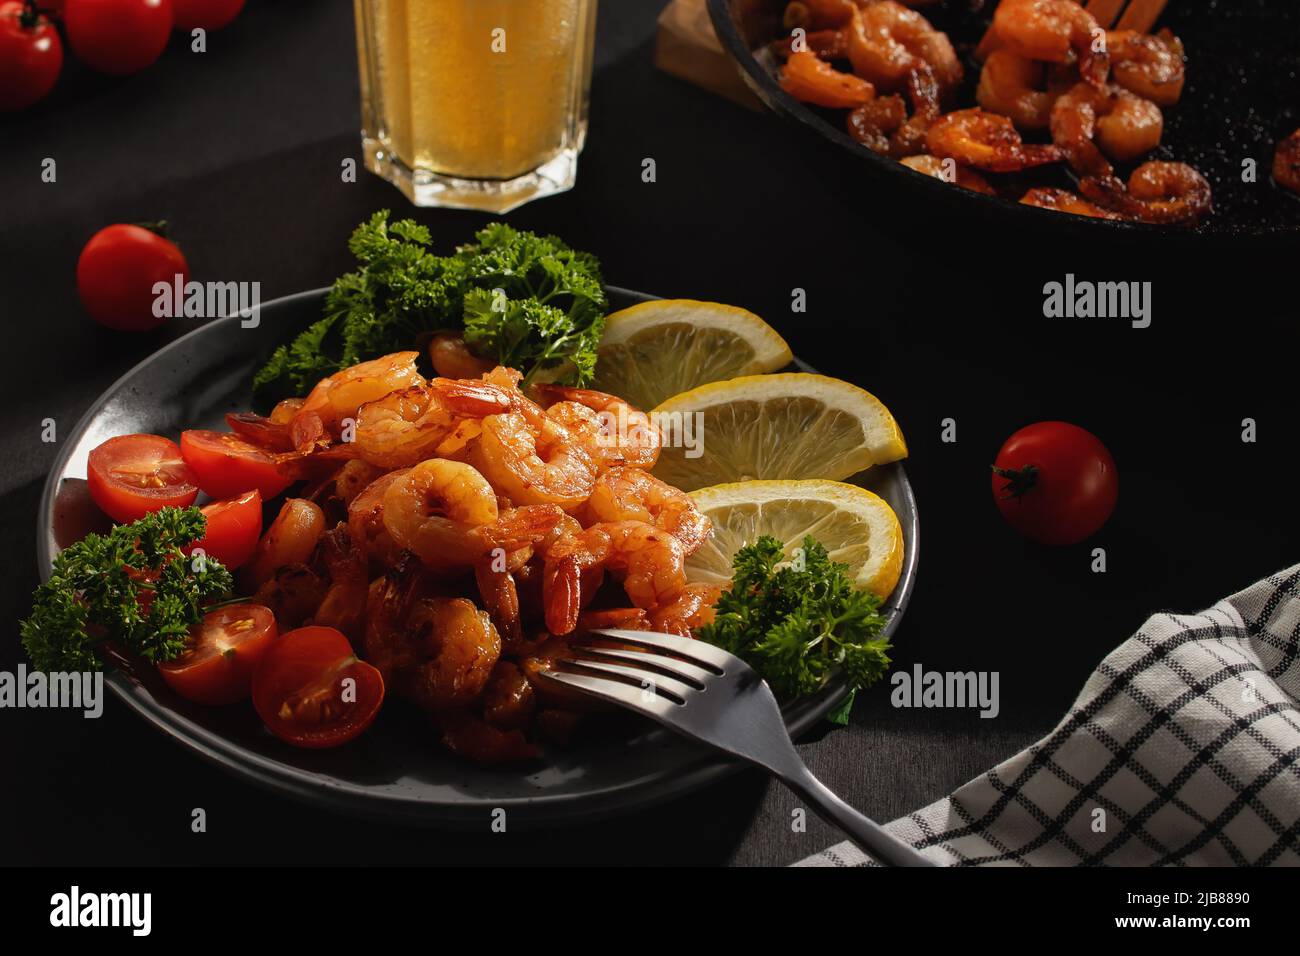 Cena servita - gamberi fritti con limone, pomodori e erbe e birra in un bicchiere sul tavolo Foto Stock